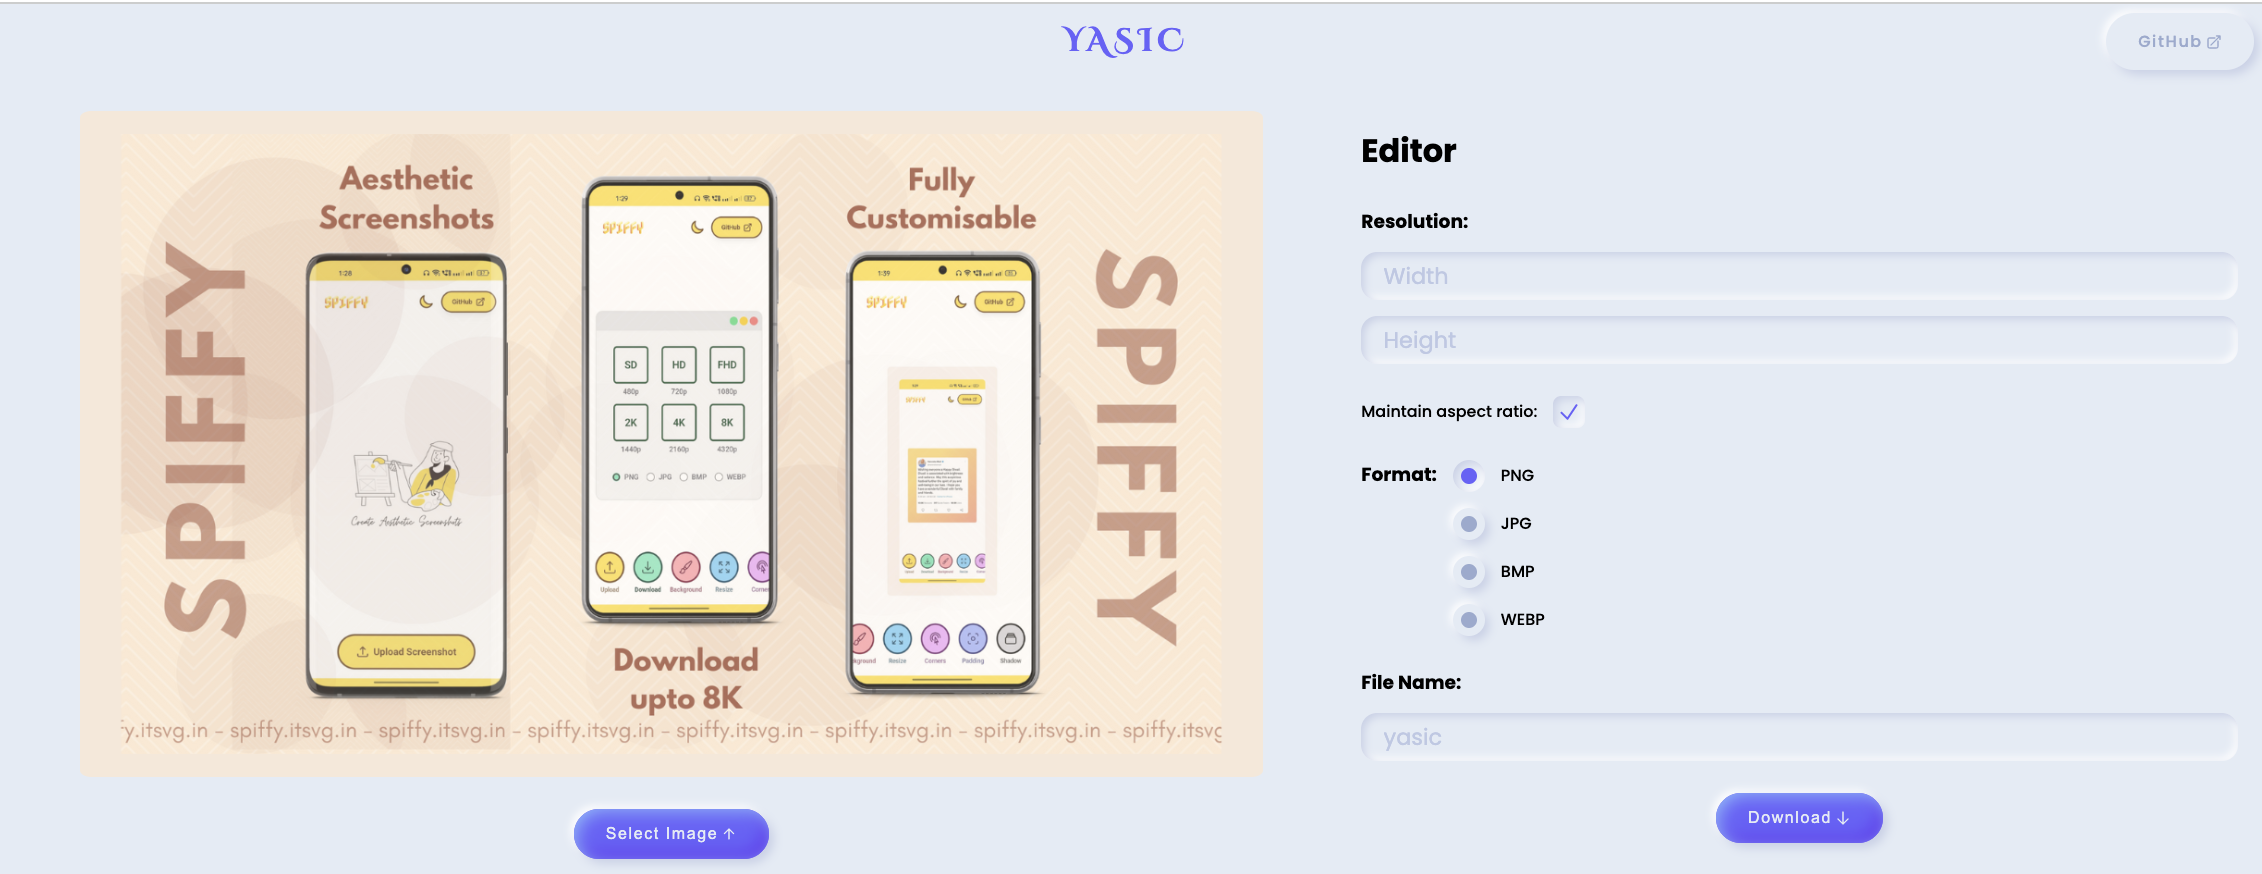 YASIC 簡易線上圖片編輯工具還能輕鬆轉檔 是什麼｜架站資源｜鵠學苑